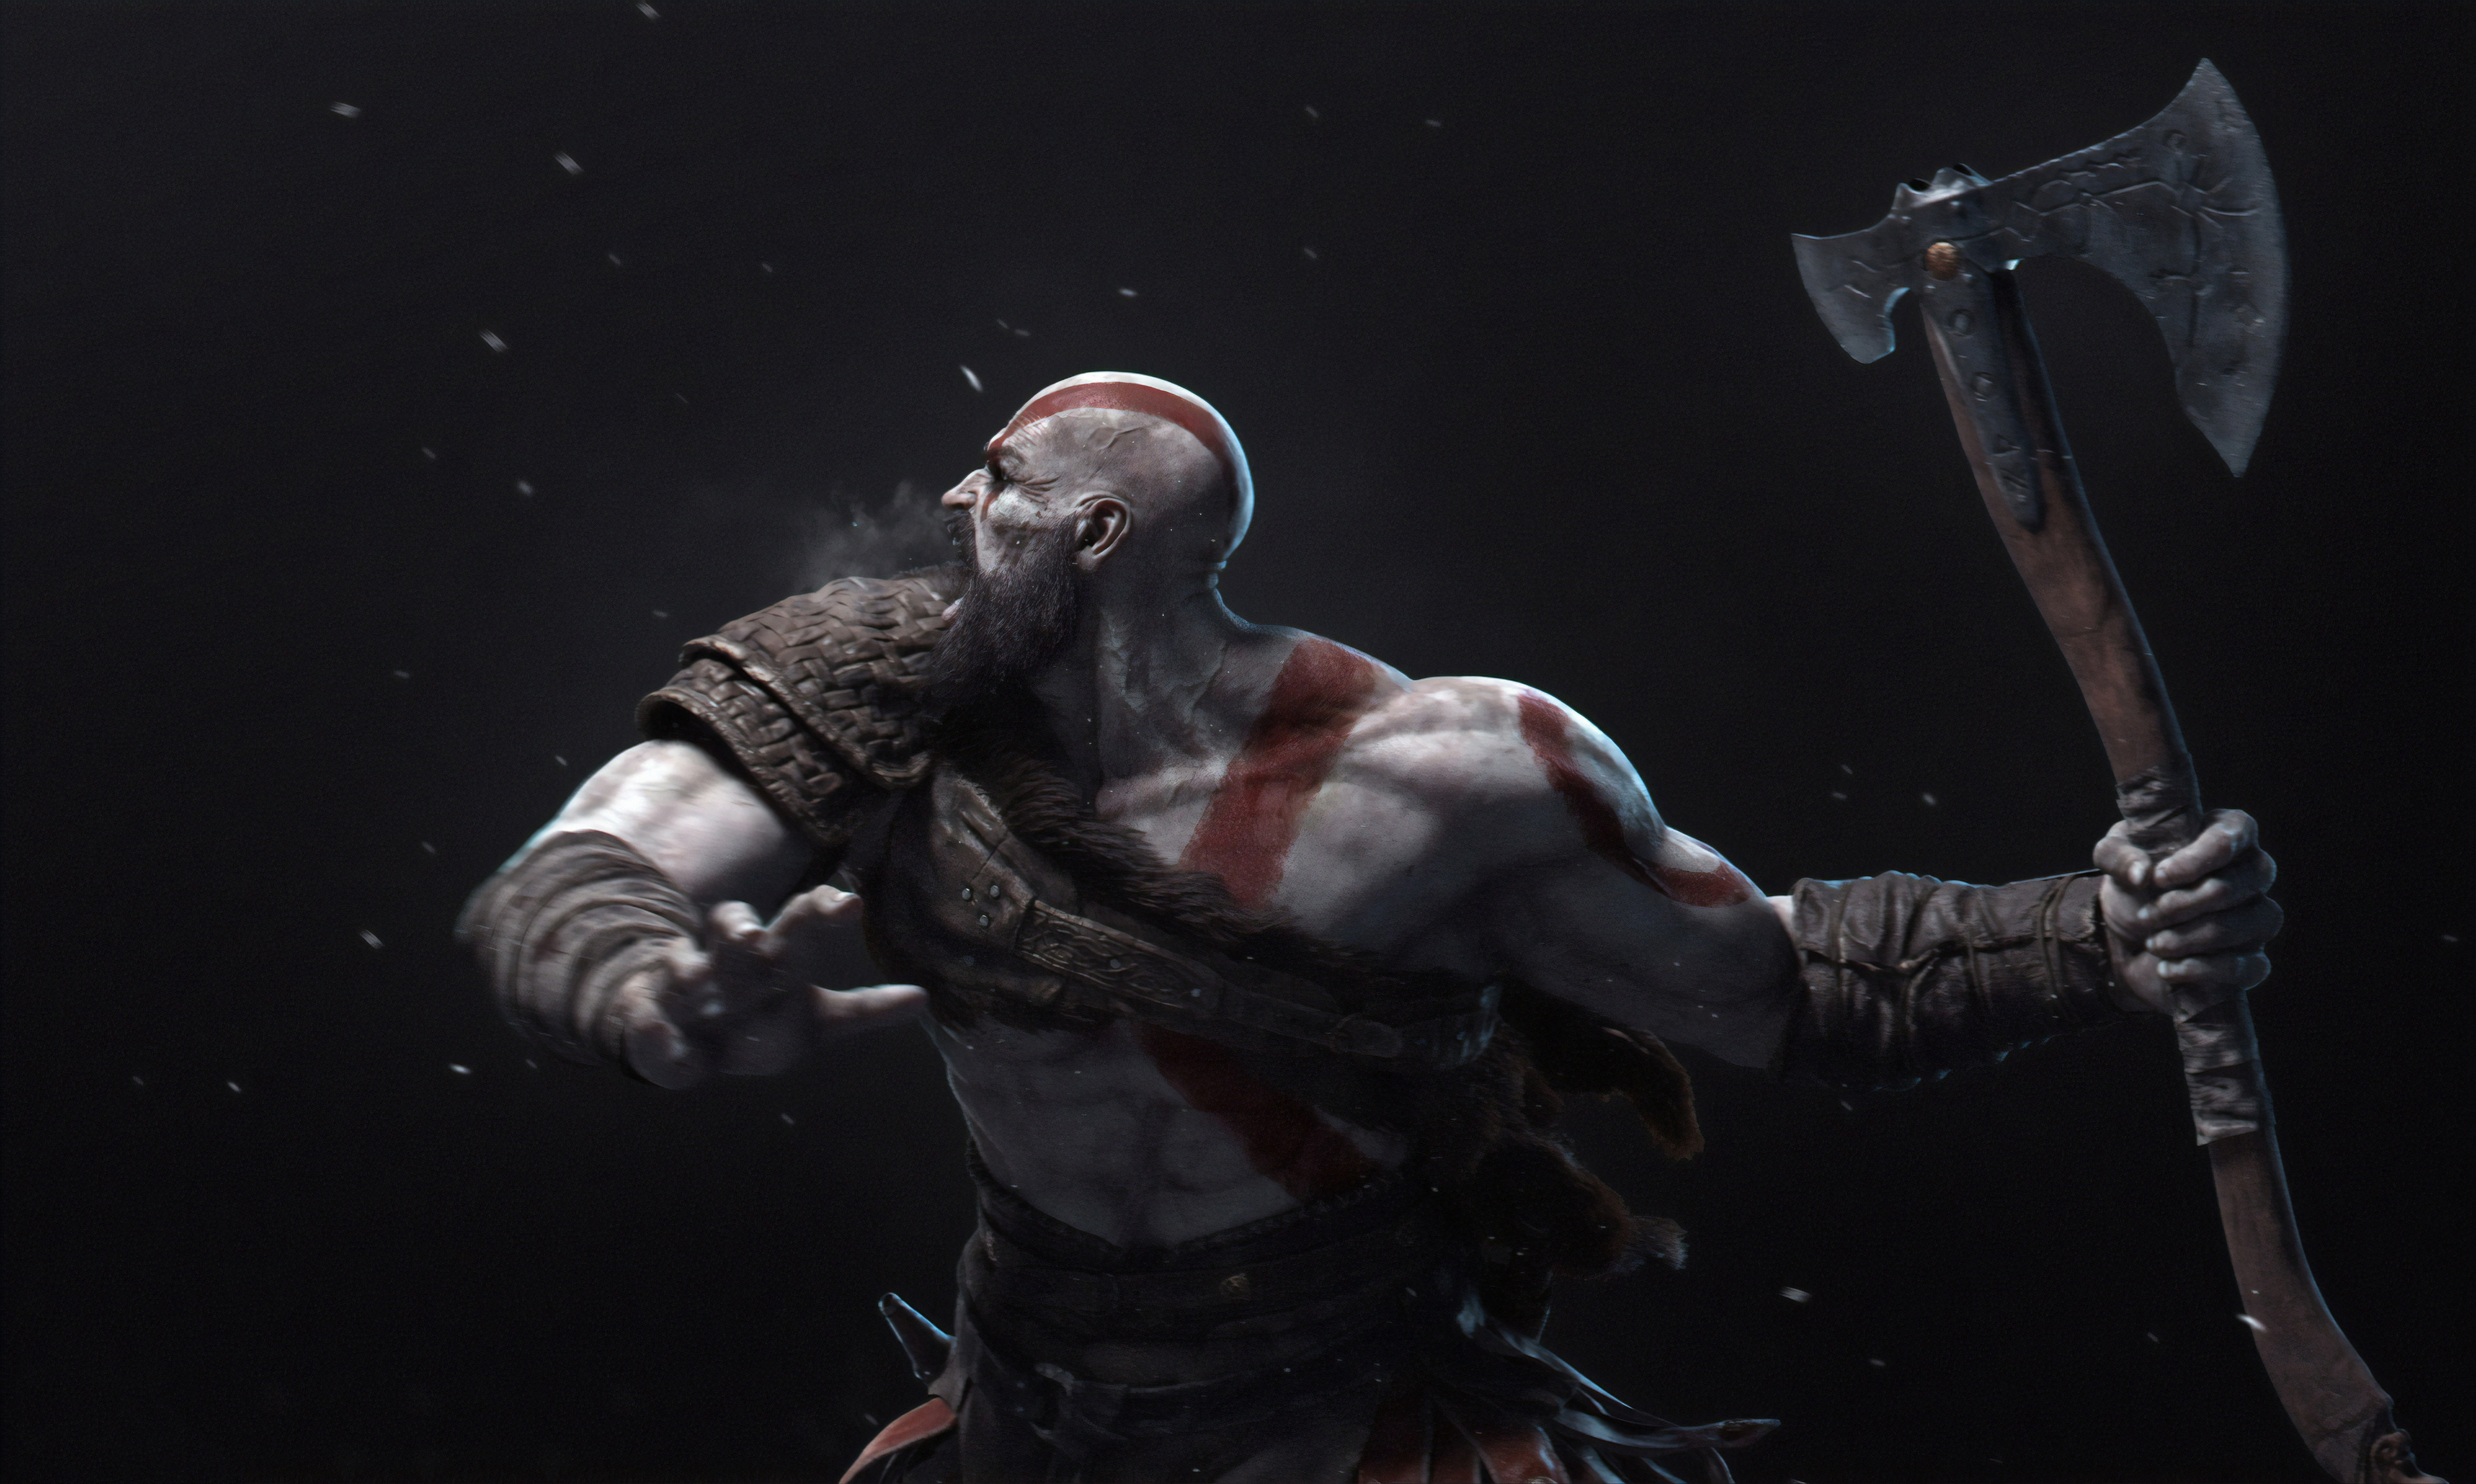 Cool Wallpapers kratos (god of war), god of war, video game, axe, warrior